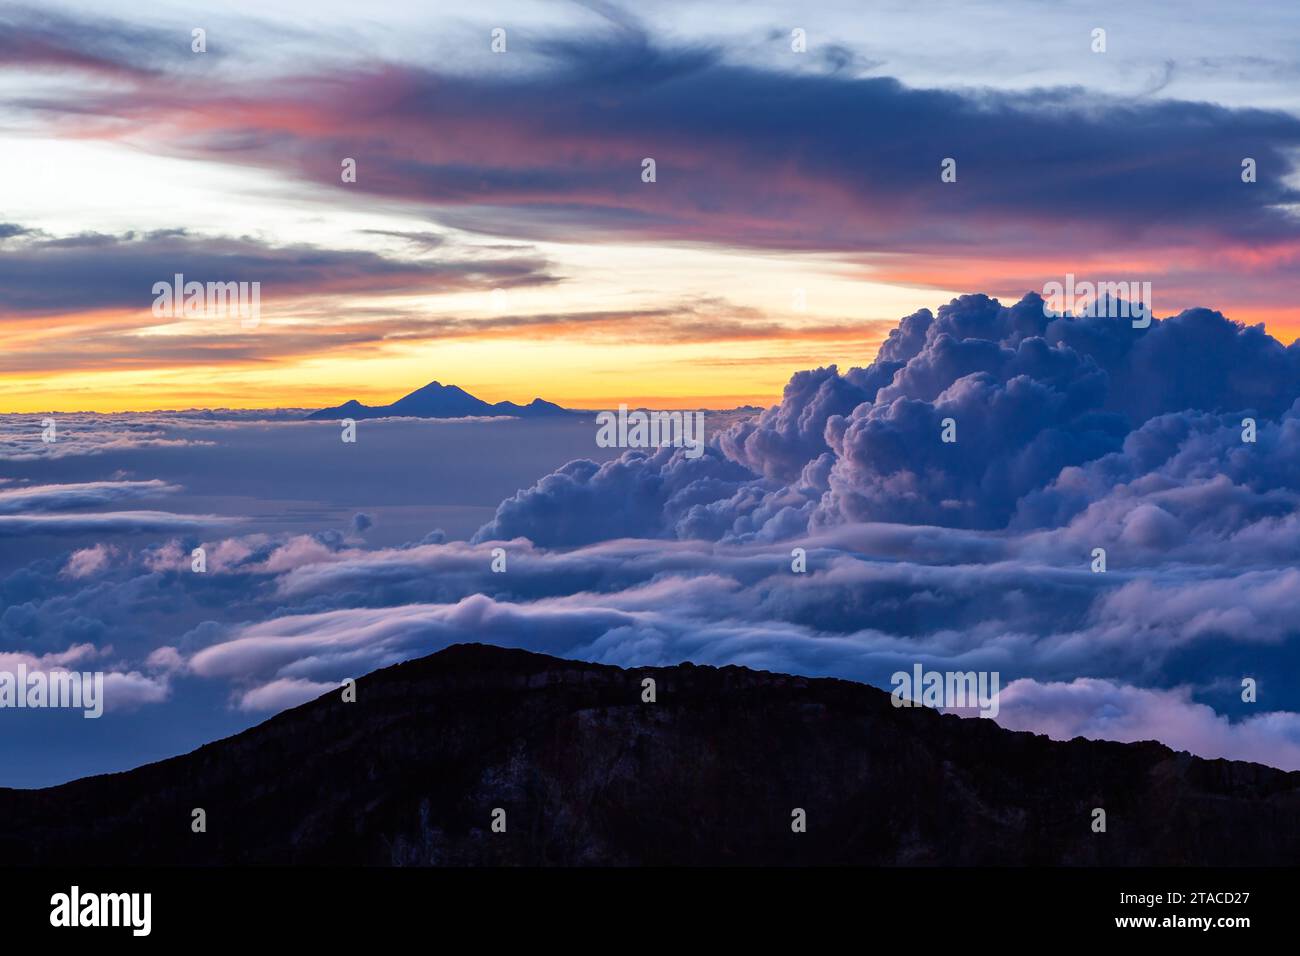 Incredibile paesaggio nuvoloso con mt. Rinjani all'orizzonte. Vista da mt. Agung all'alba. Bali, Indonesia. Foto Stock